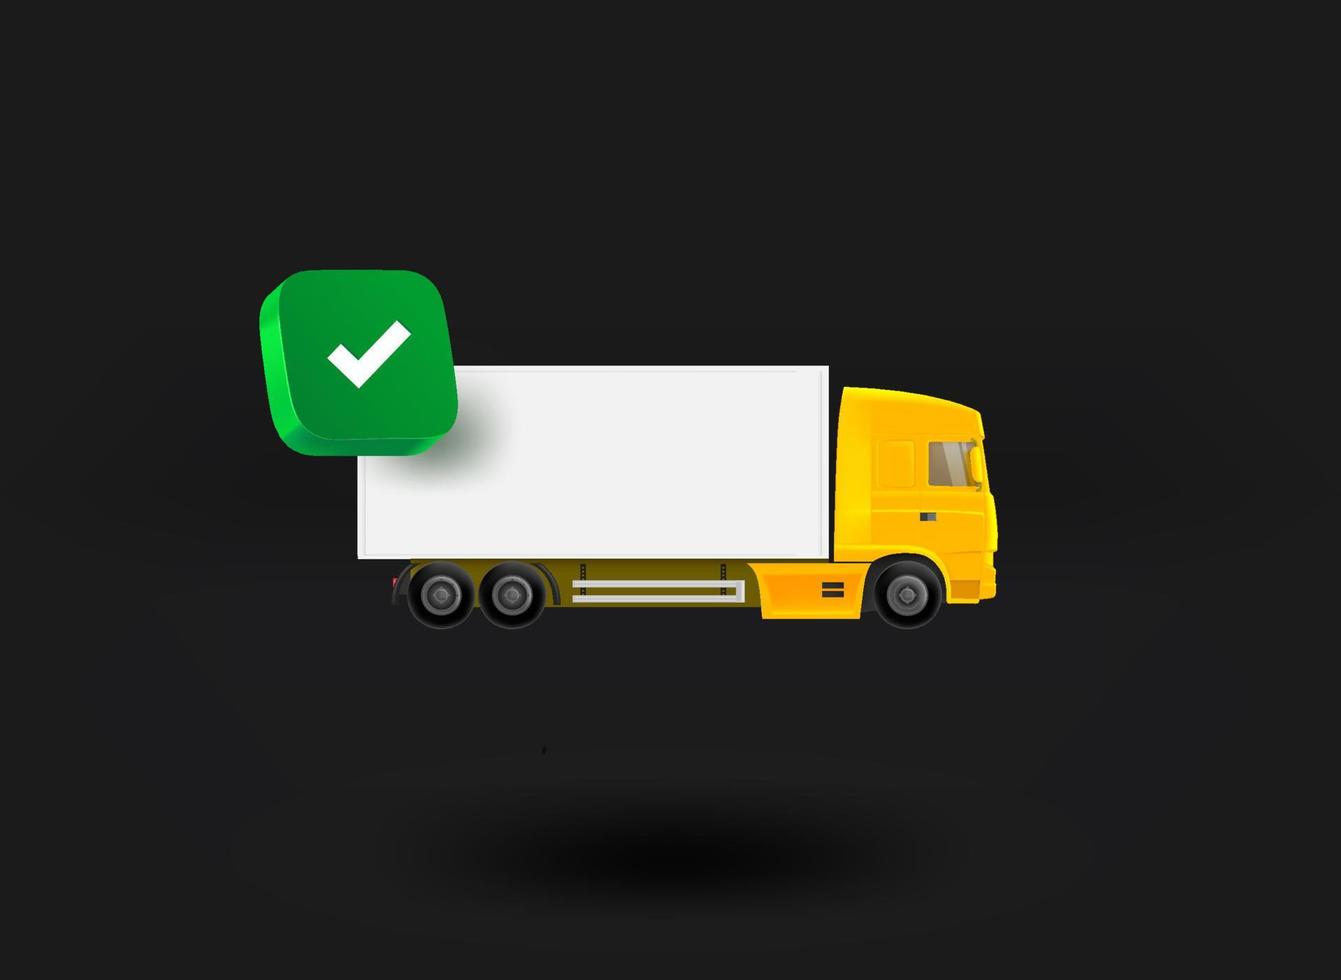 camion giallo con icona segno di spunta. illustrazione vettoriale 3d